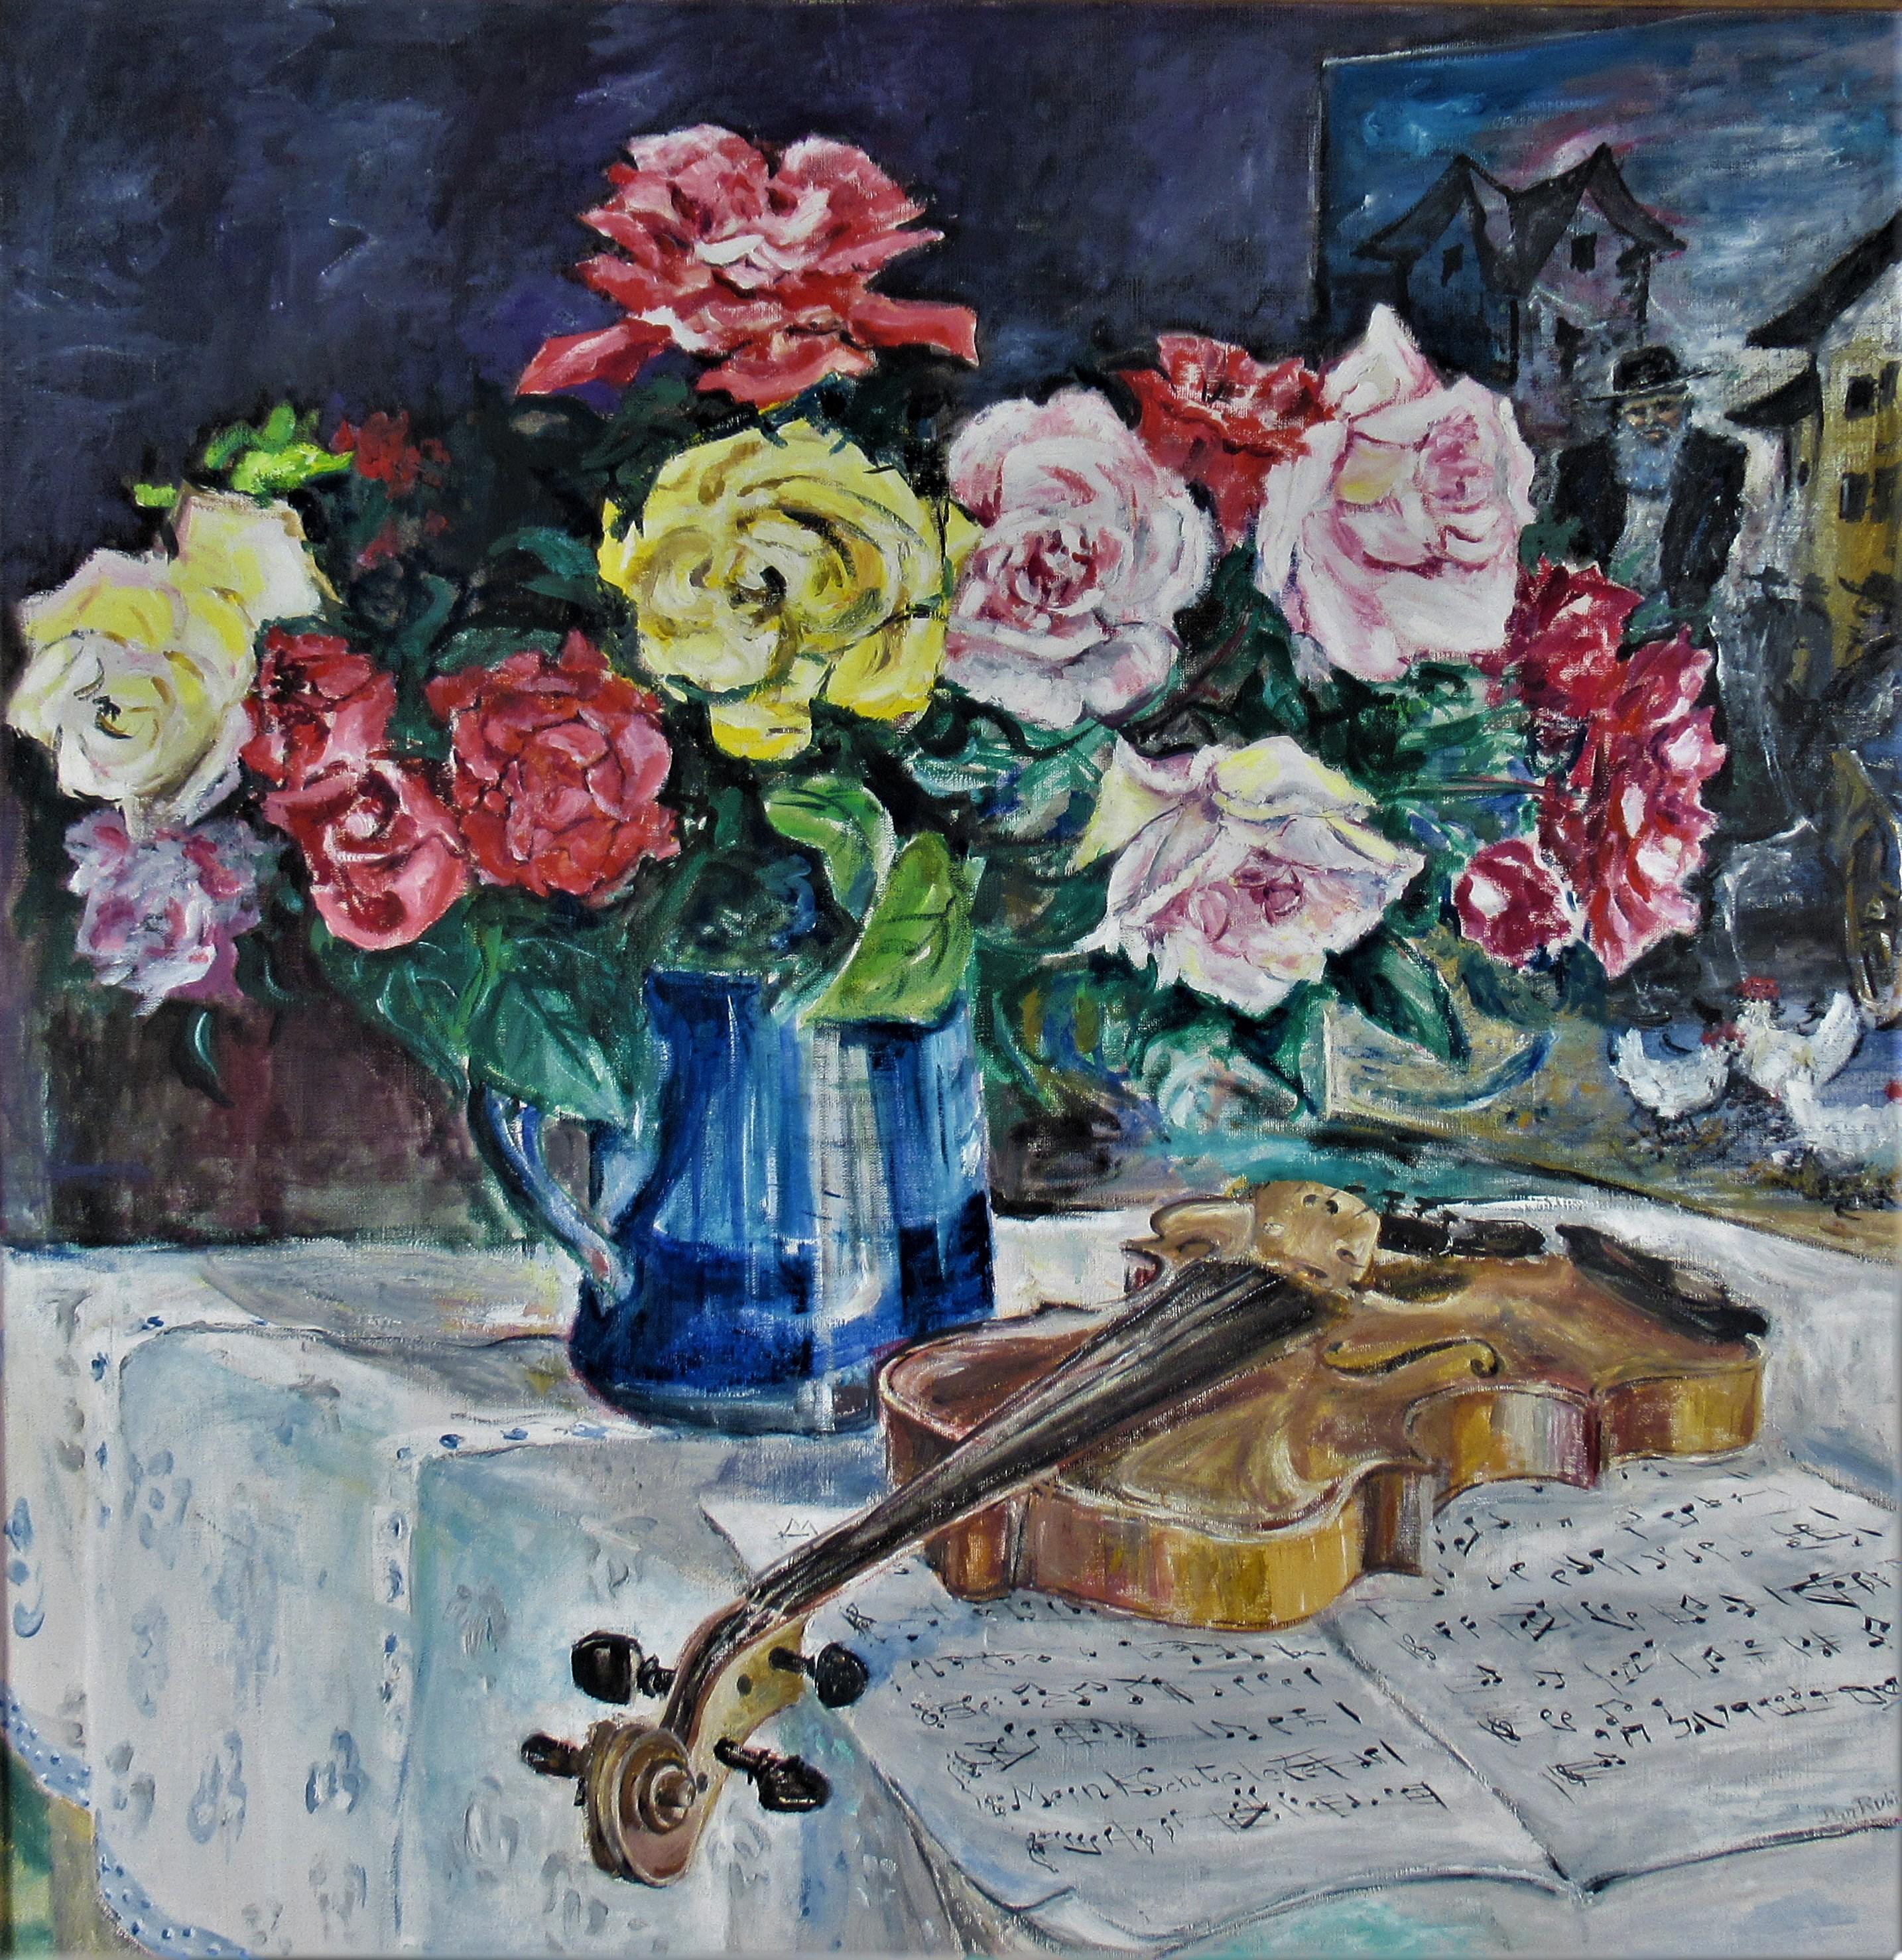 Flowers in a Vase and Violin - Painting by Dan Rubinstein